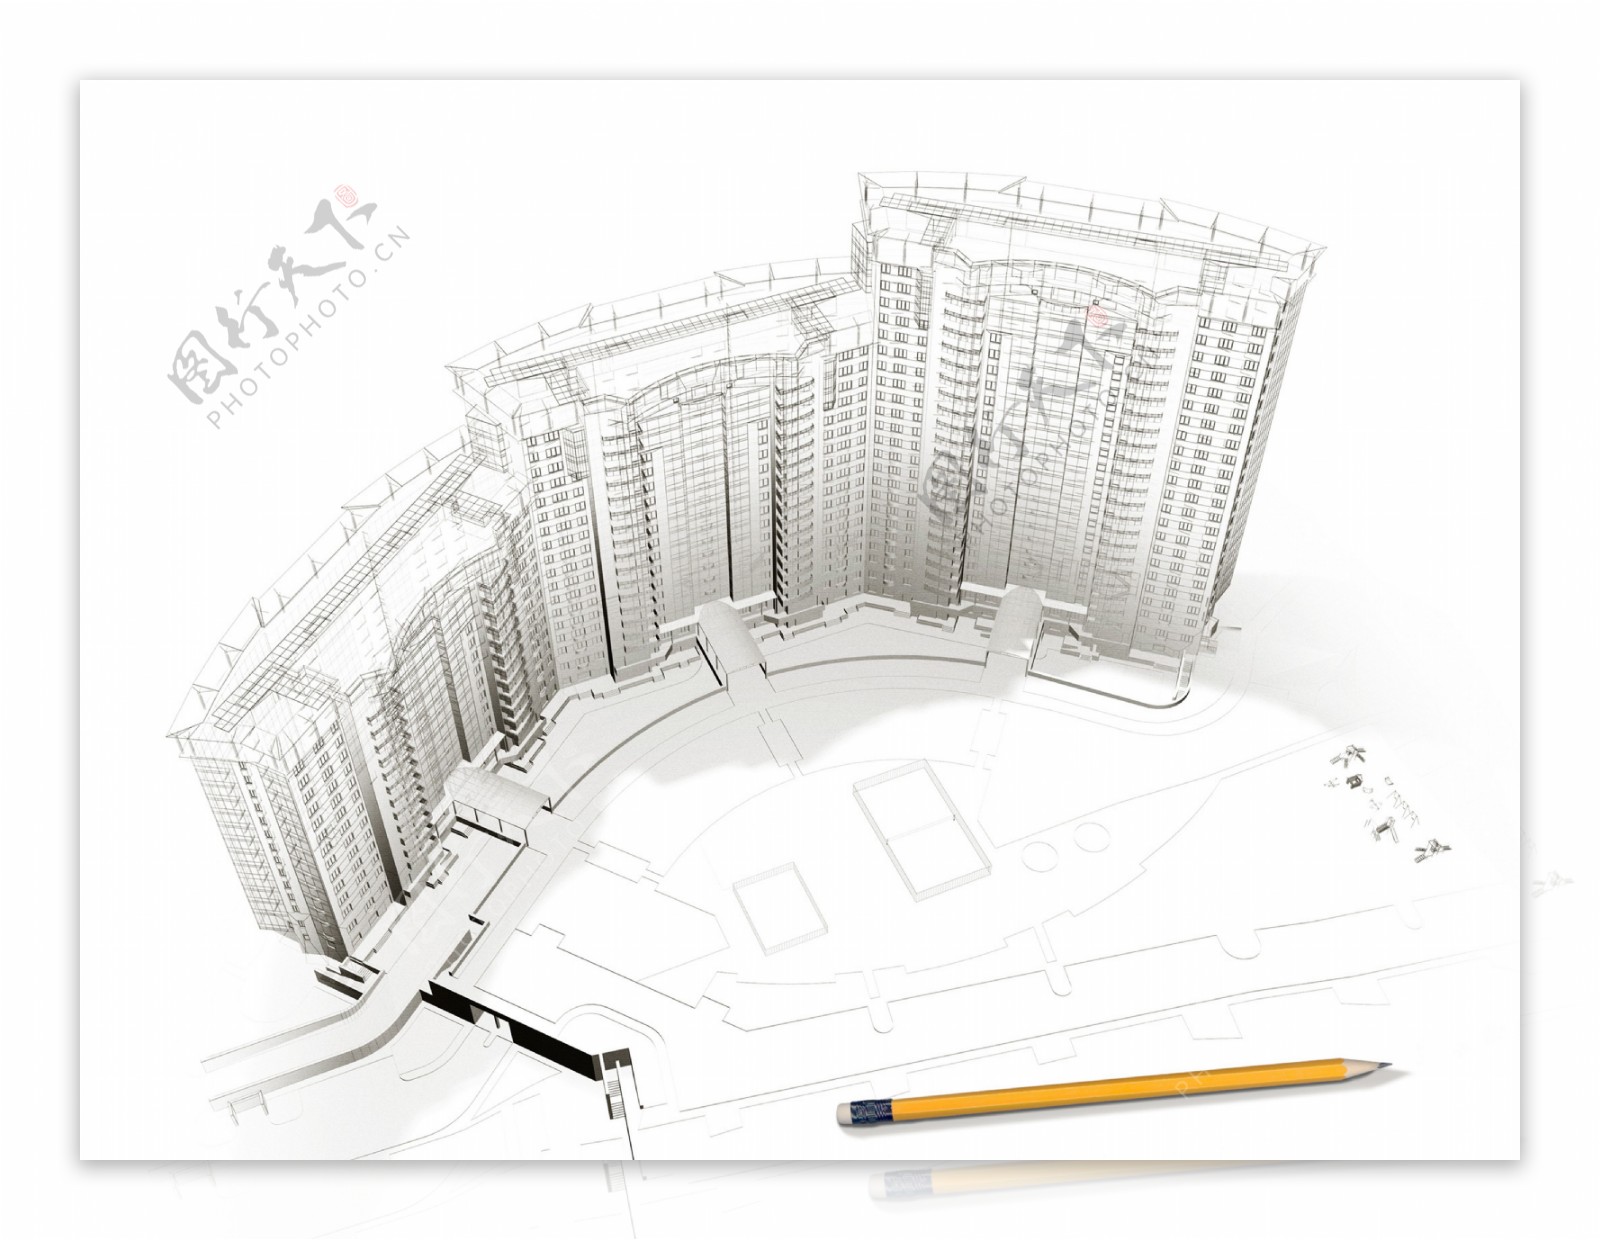 3d建筑模型示意图样板高楼大厦图片